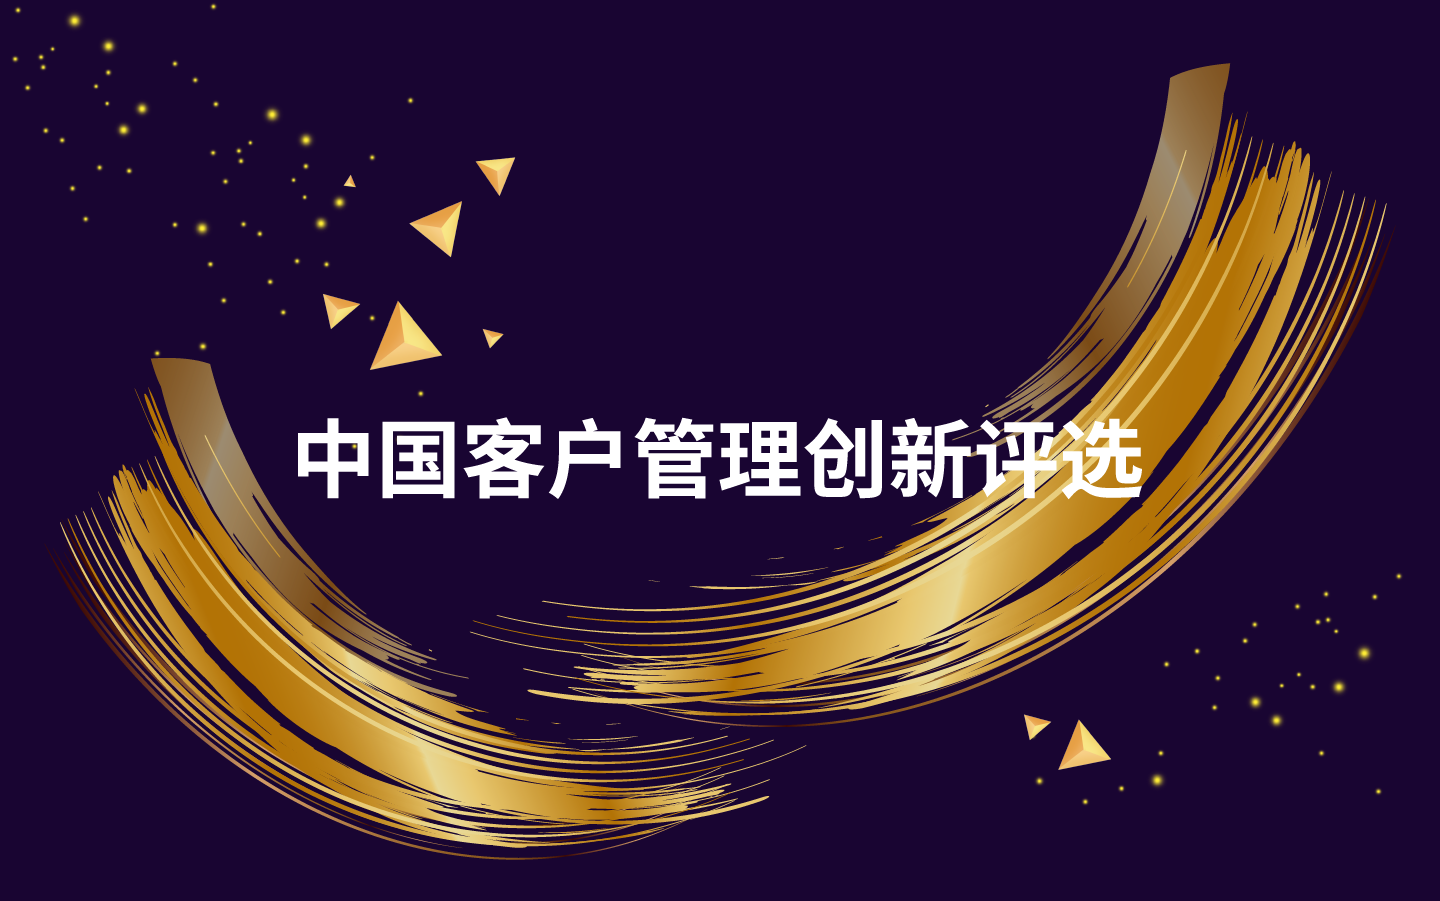 2019年度中国客户管理创新评选